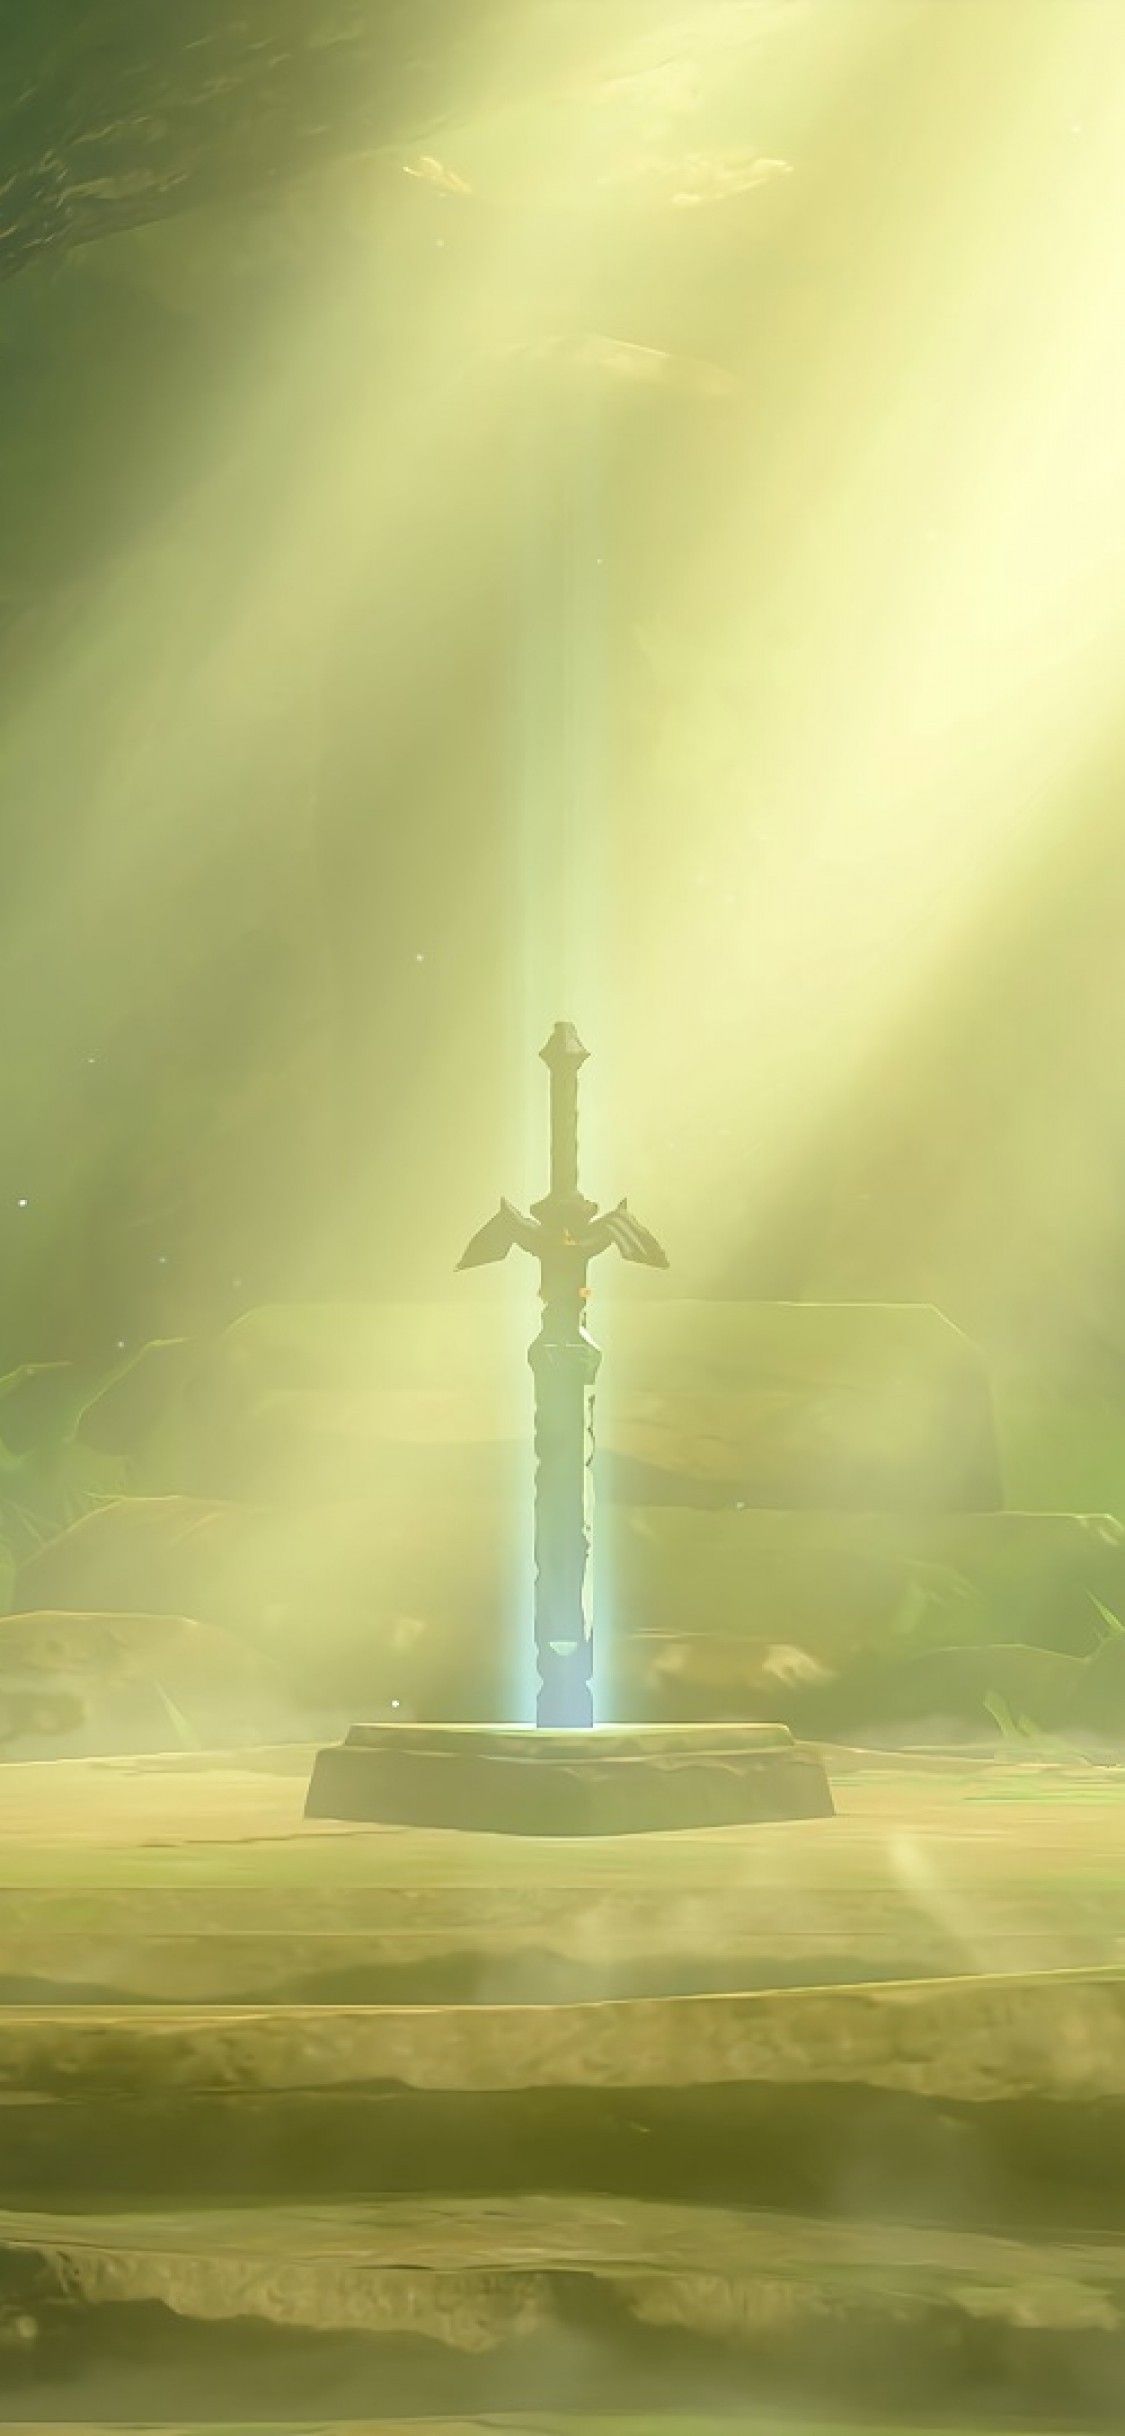 Download 1125x2436 The Legend Of Zelda: Breath Of The Wild, Sword